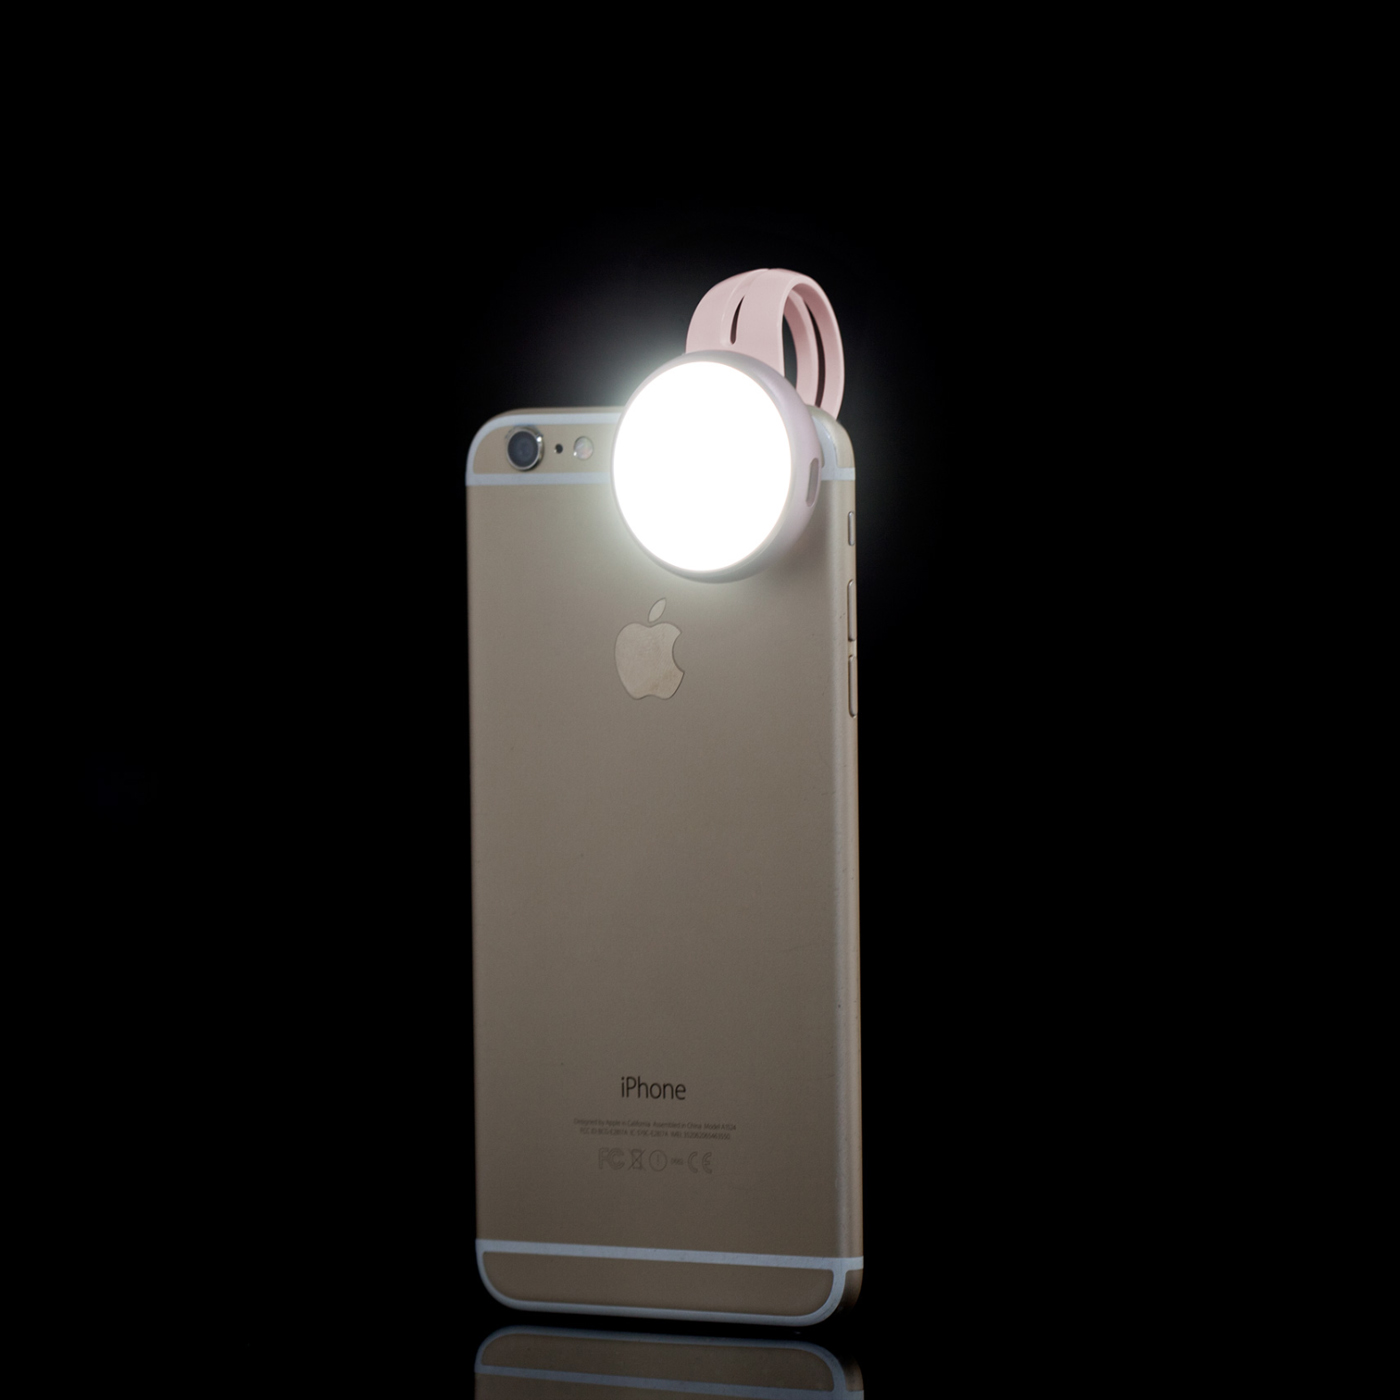 LED blesk, Momax, iPhone, fotovýbava, fotodoplnky, fashiontech, CES, objektív, Rose Gold